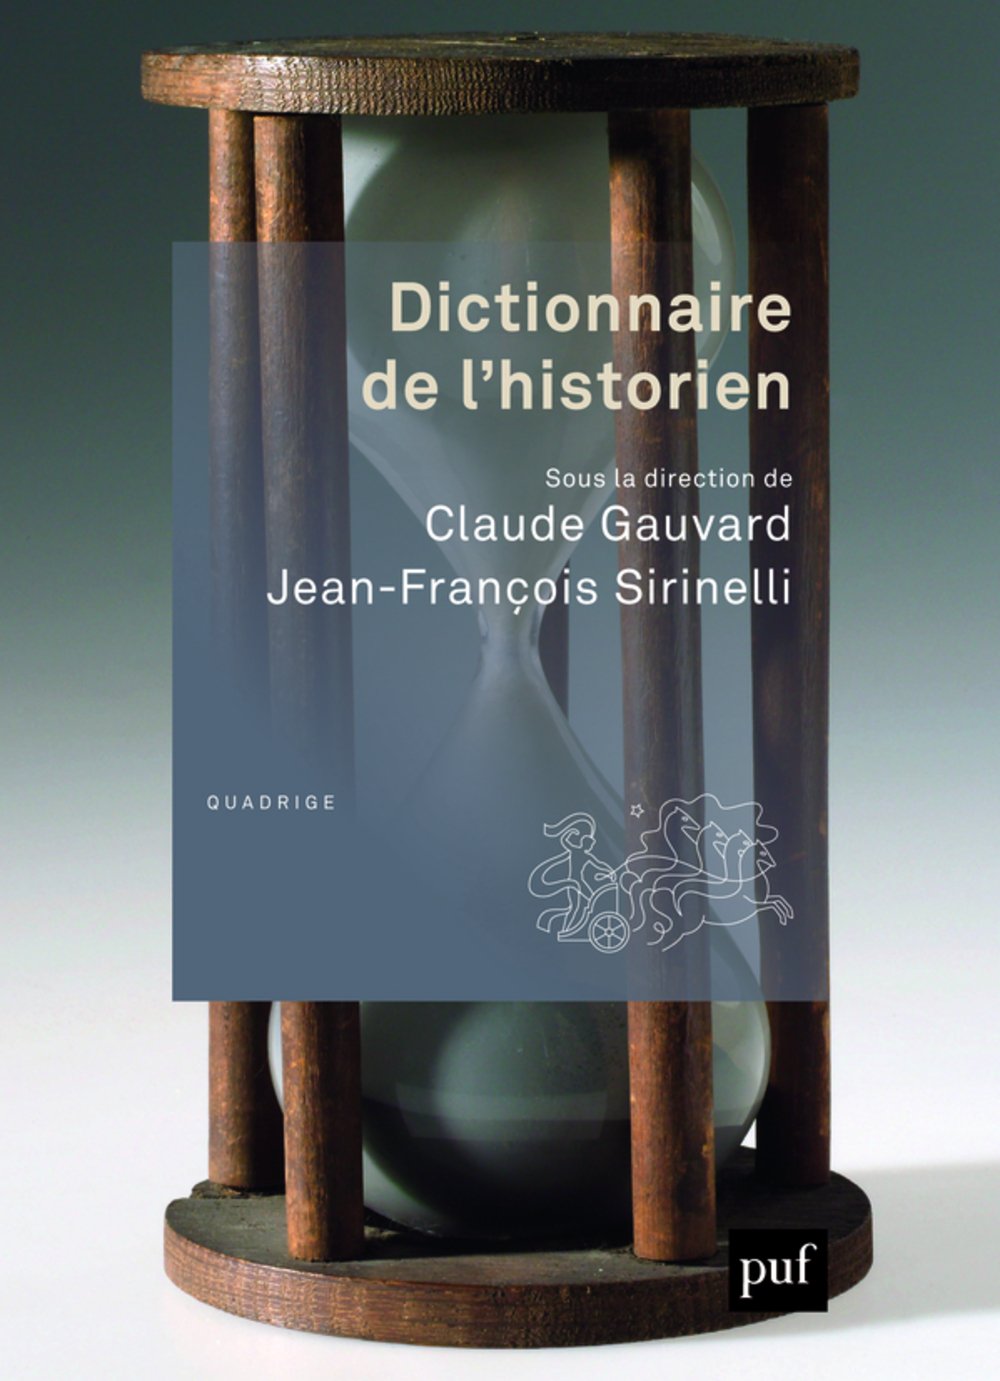 Le Dictionnaire de l’historien